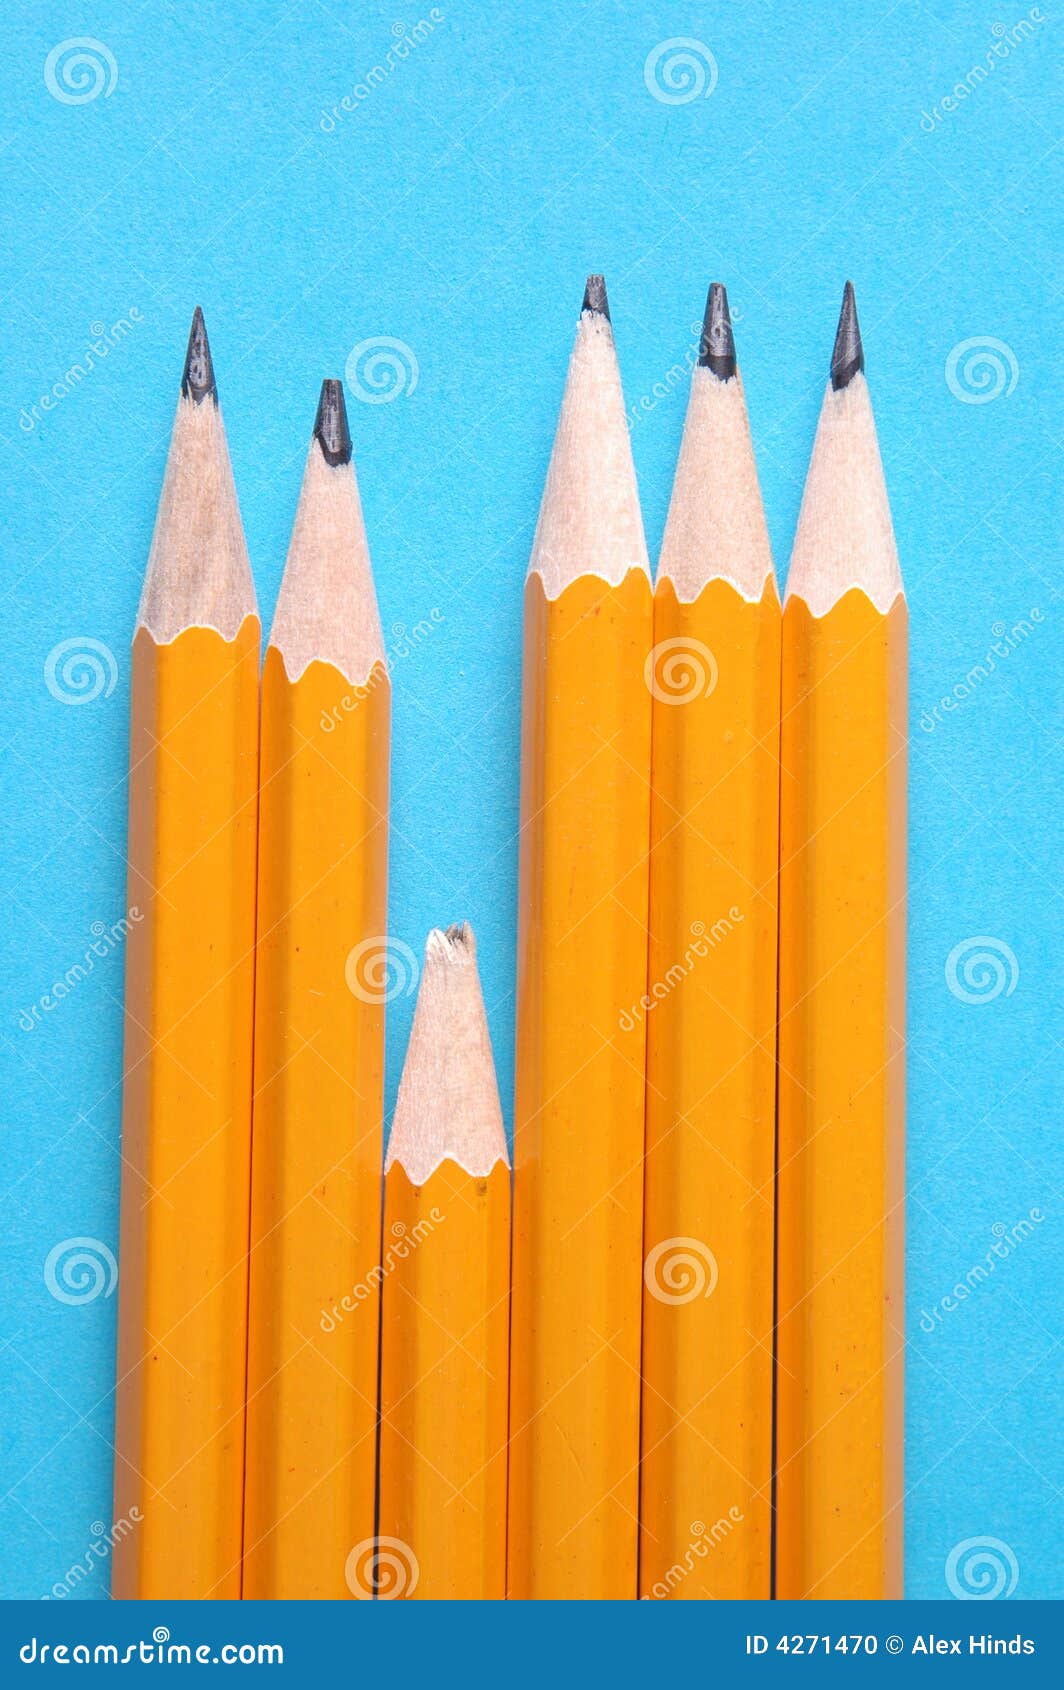 blunt pencil